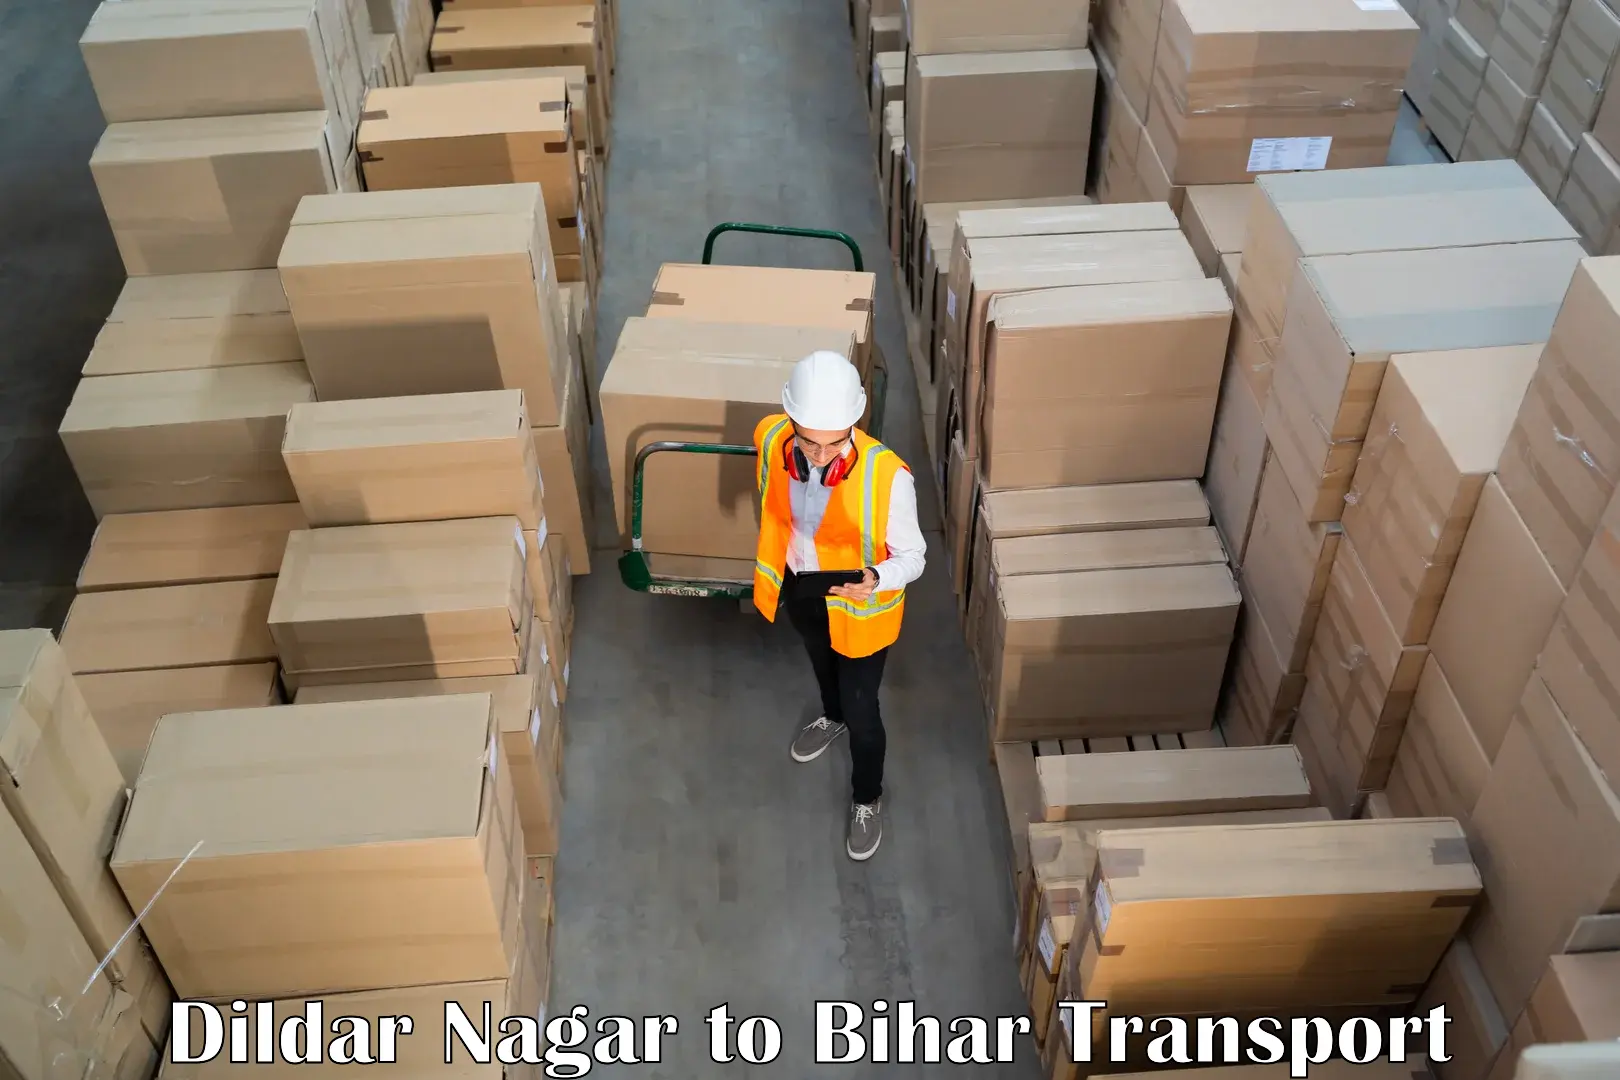 Shipping partner Dildar Nagar to Kochas